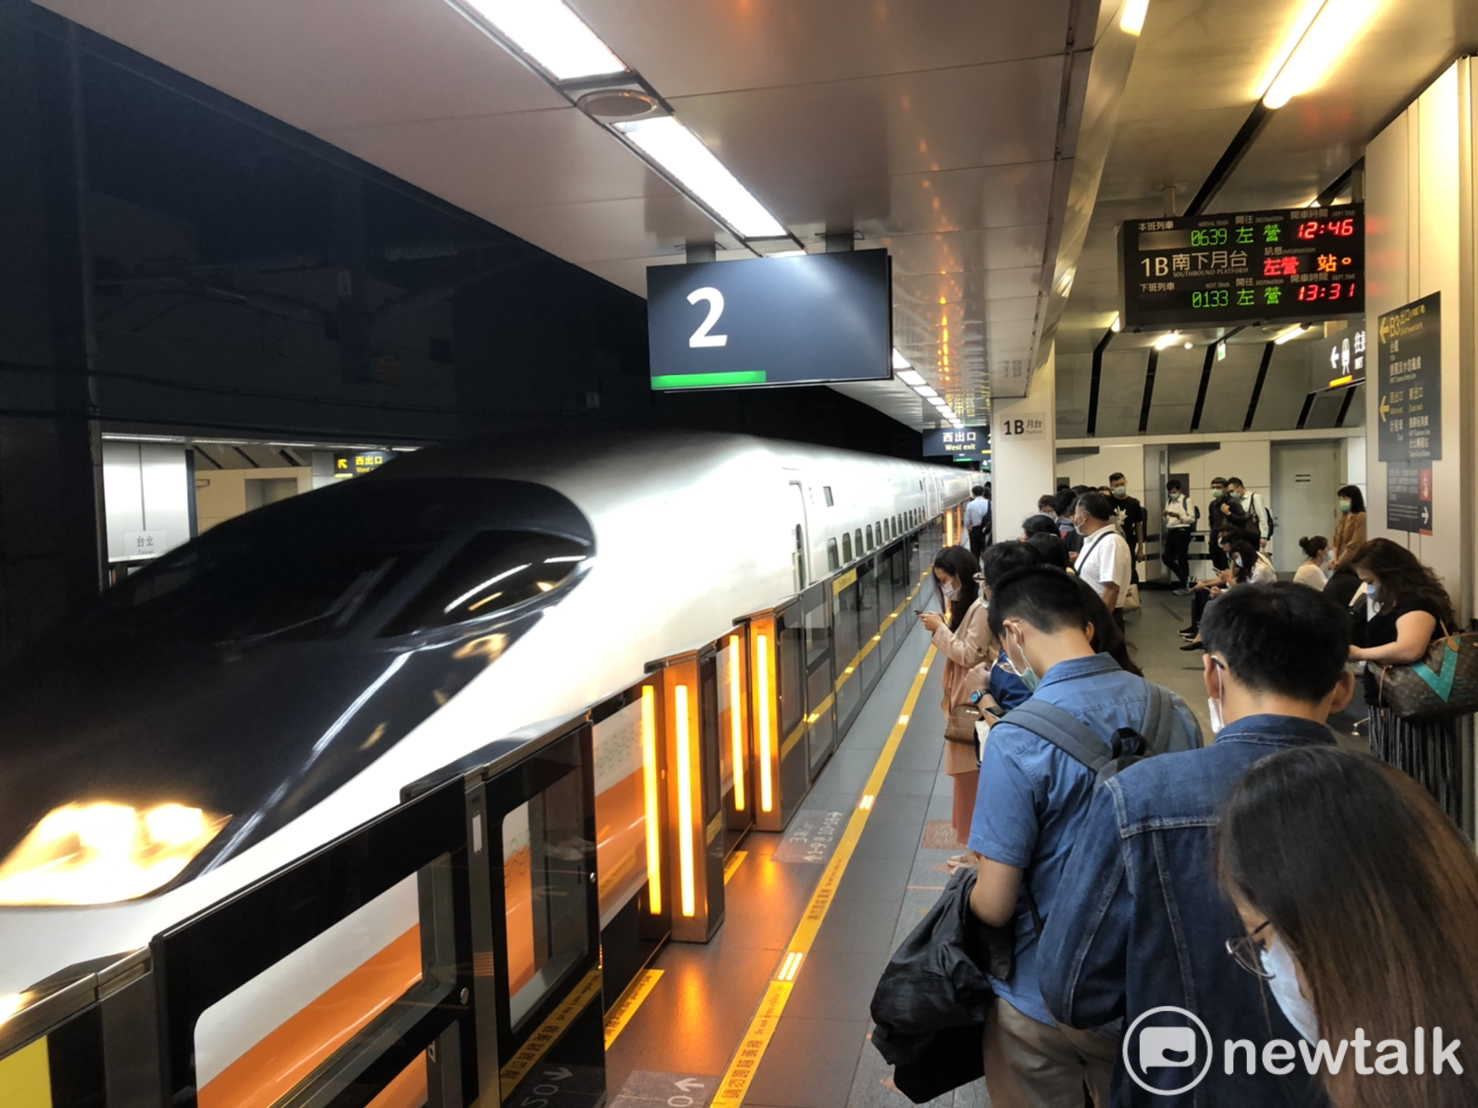 台南深夜地震影響高鐵4列車停駛 若未搭車可全額退票